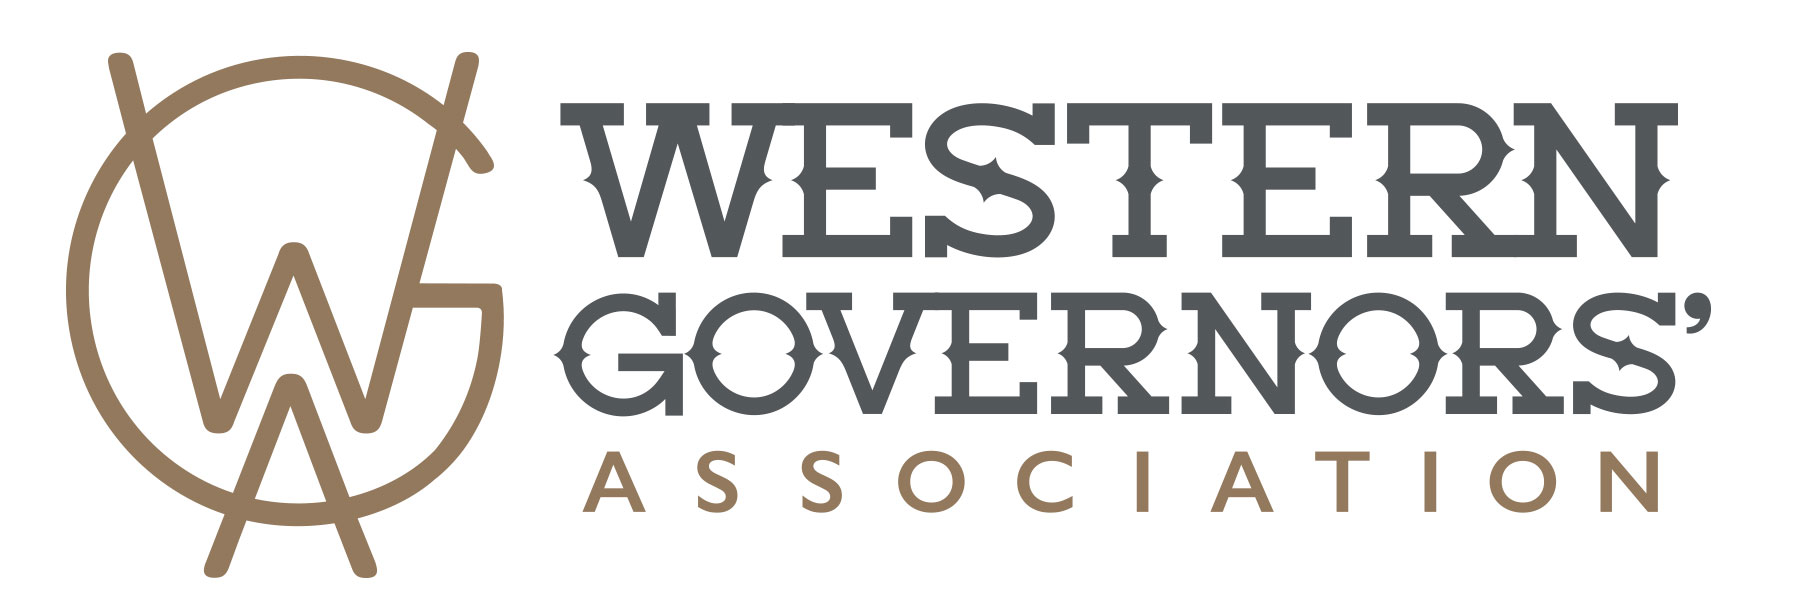 WGA logo